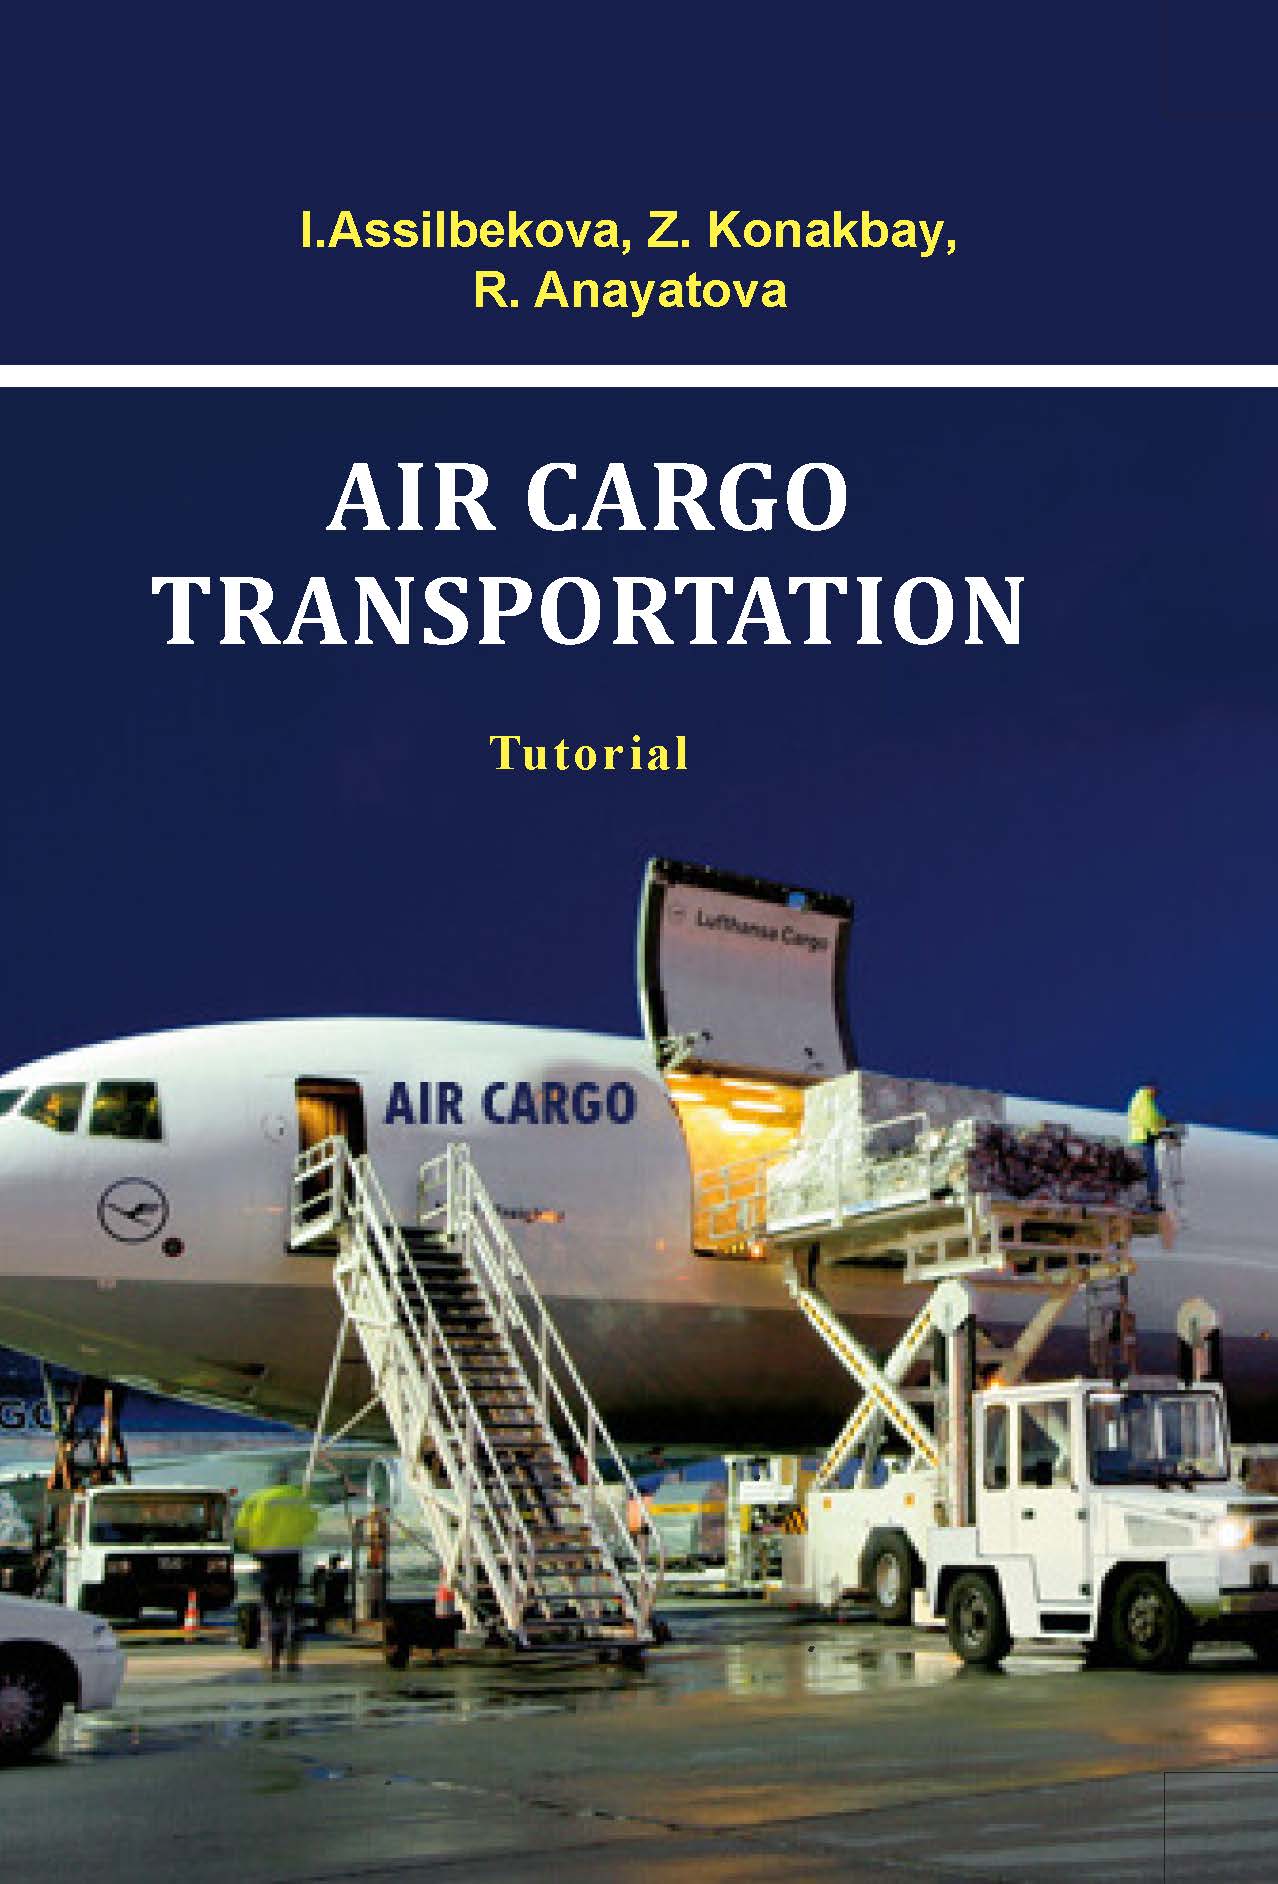 AIR CARGO TRANSPORTATION
Tutorial